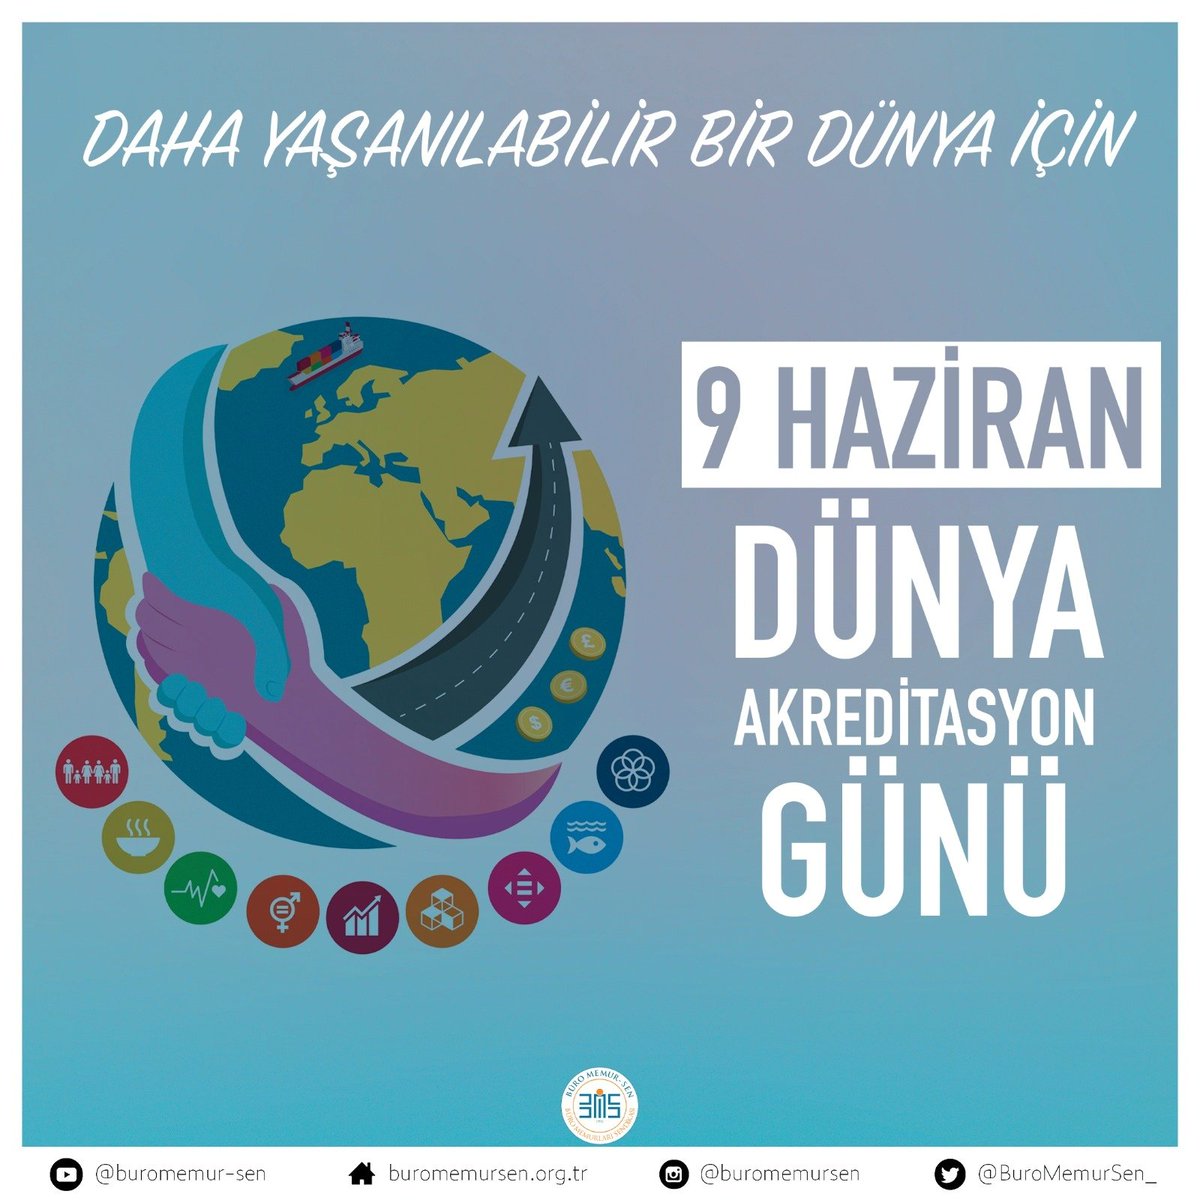 Genel Yetkili Sendika olduğumuz Türk Akreditasyon Kurumu personelinin Dünya Akreditasyon Günü'nü kutluyor, çalışmalarında başarılar diliyoruz.

Unutmayalım!

“Akreditasyon: Daha güvenli bir dünya sunar”